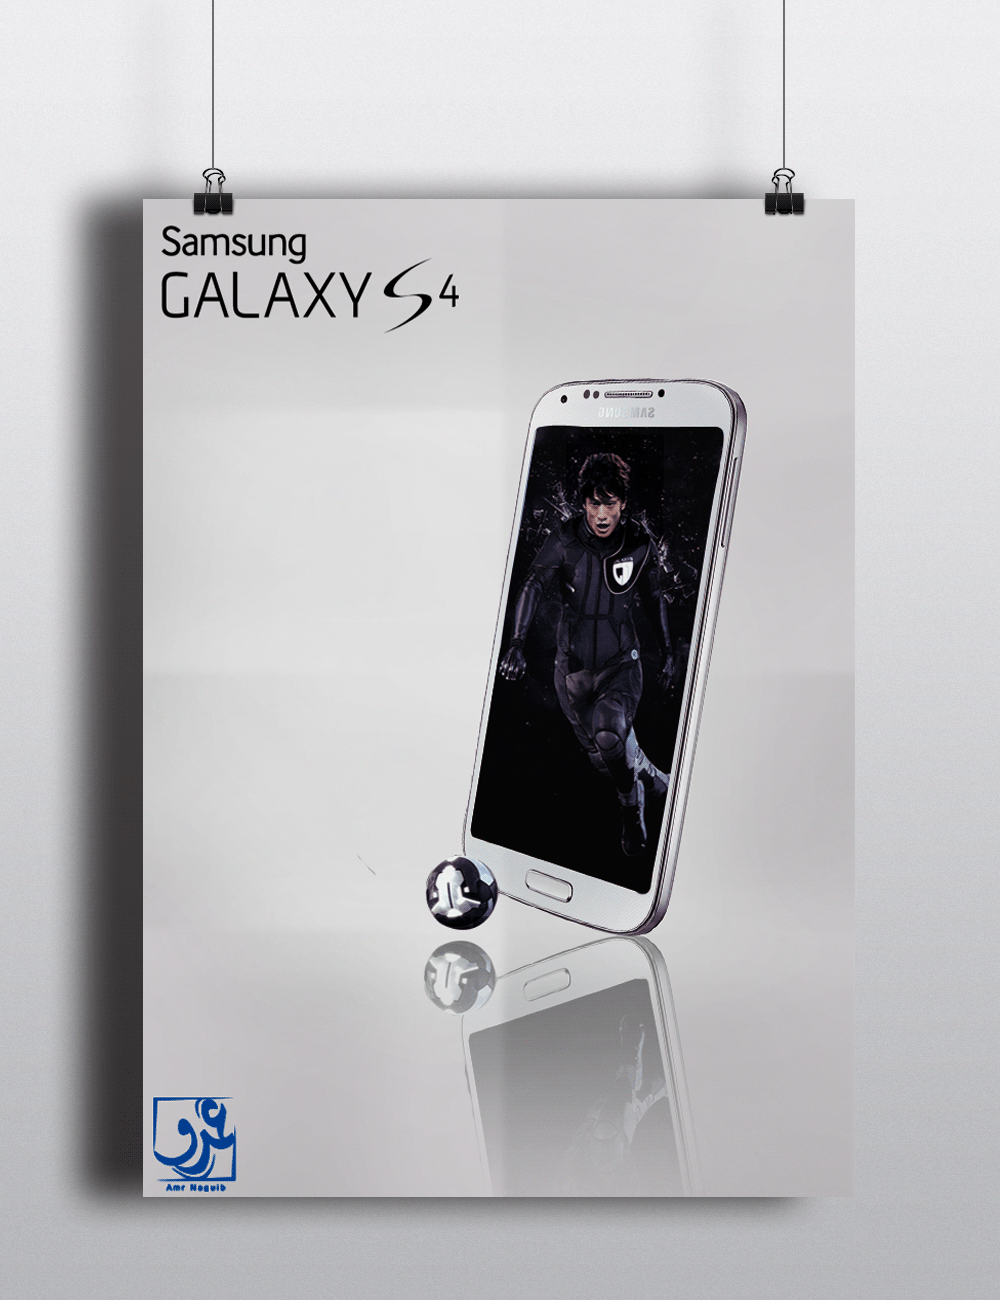 Samsung s4 Samsung Galaxy S4 samsung galaxy s4 egypt